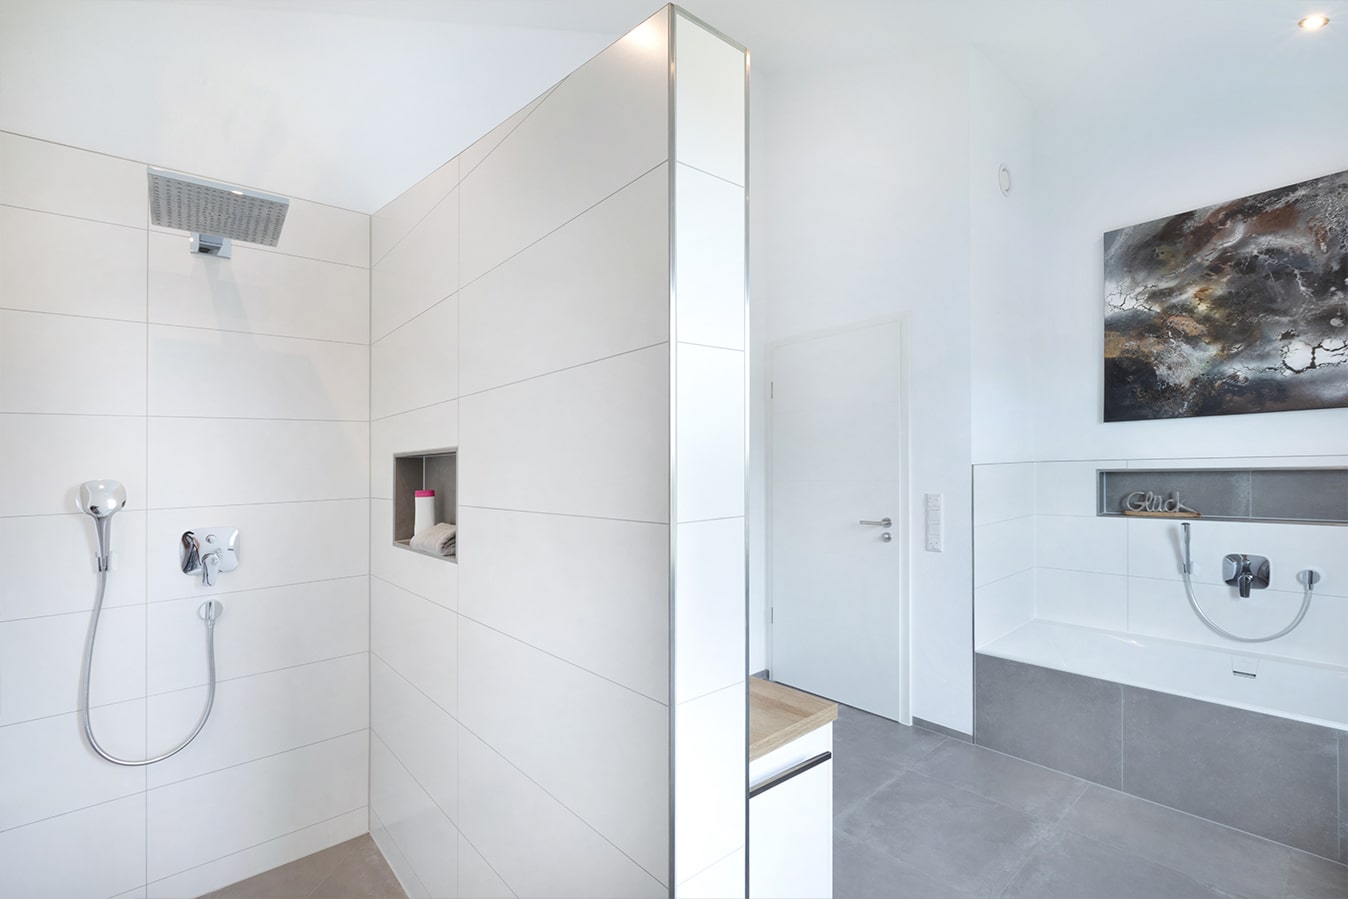 Moderne-Stadtvilla-mit-Walmdach-badezimmer-offene-dusche-badewanne